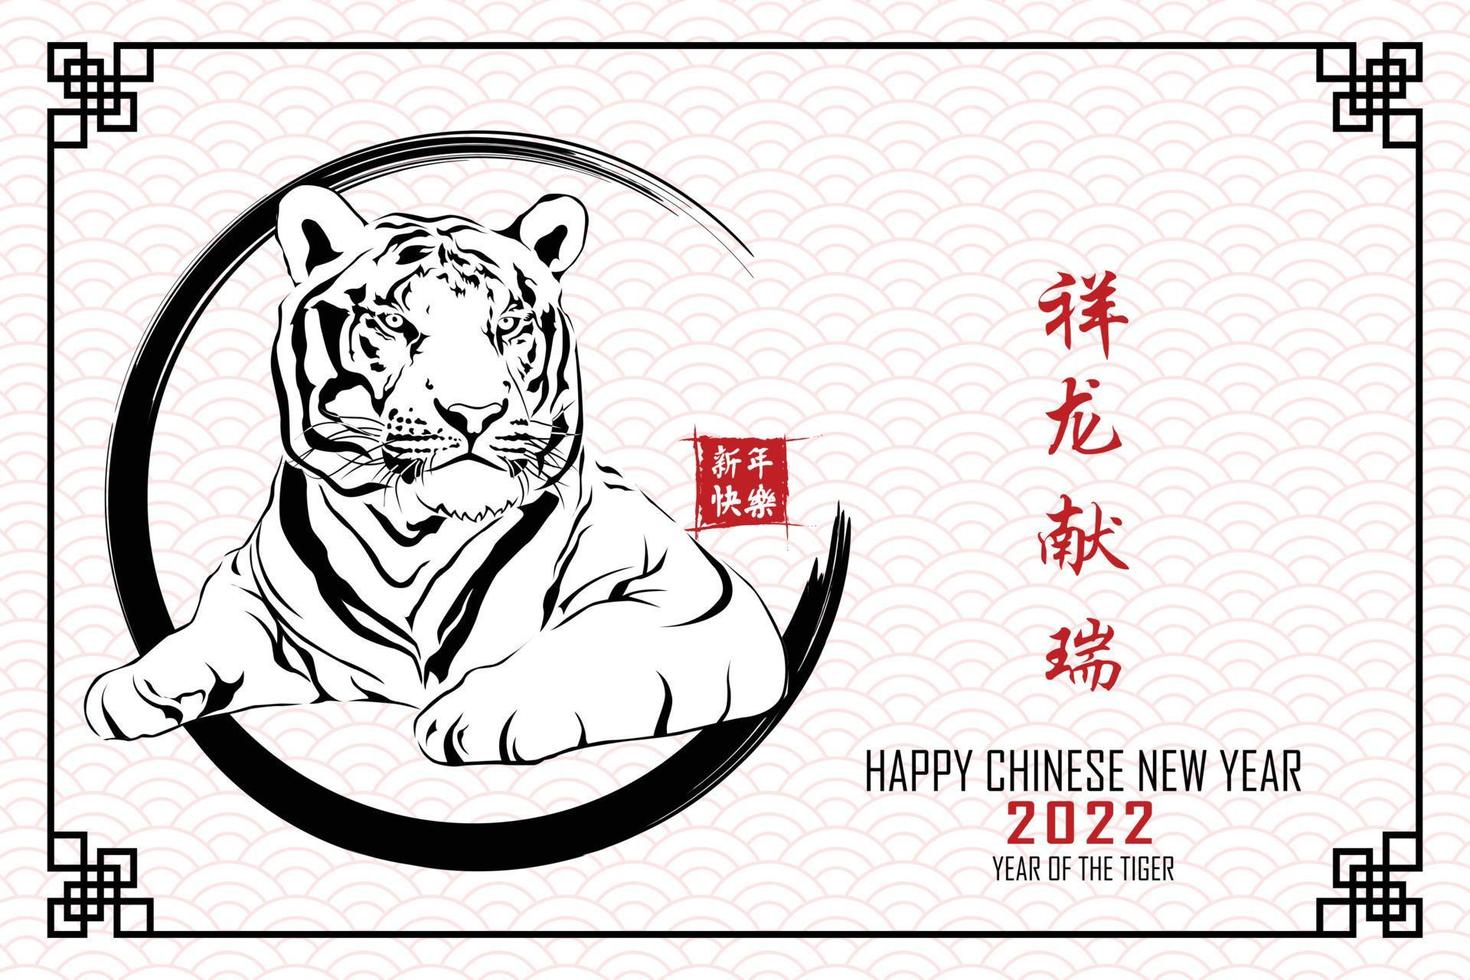 nouvel an chinois 2022, année du tigre avec tête de tigre rouge se trouvant dans le cadre de cercle de modèle chinois isolé sur fond blanc. traduction de texte chinois bonne année 2022, année du tigre vecteur